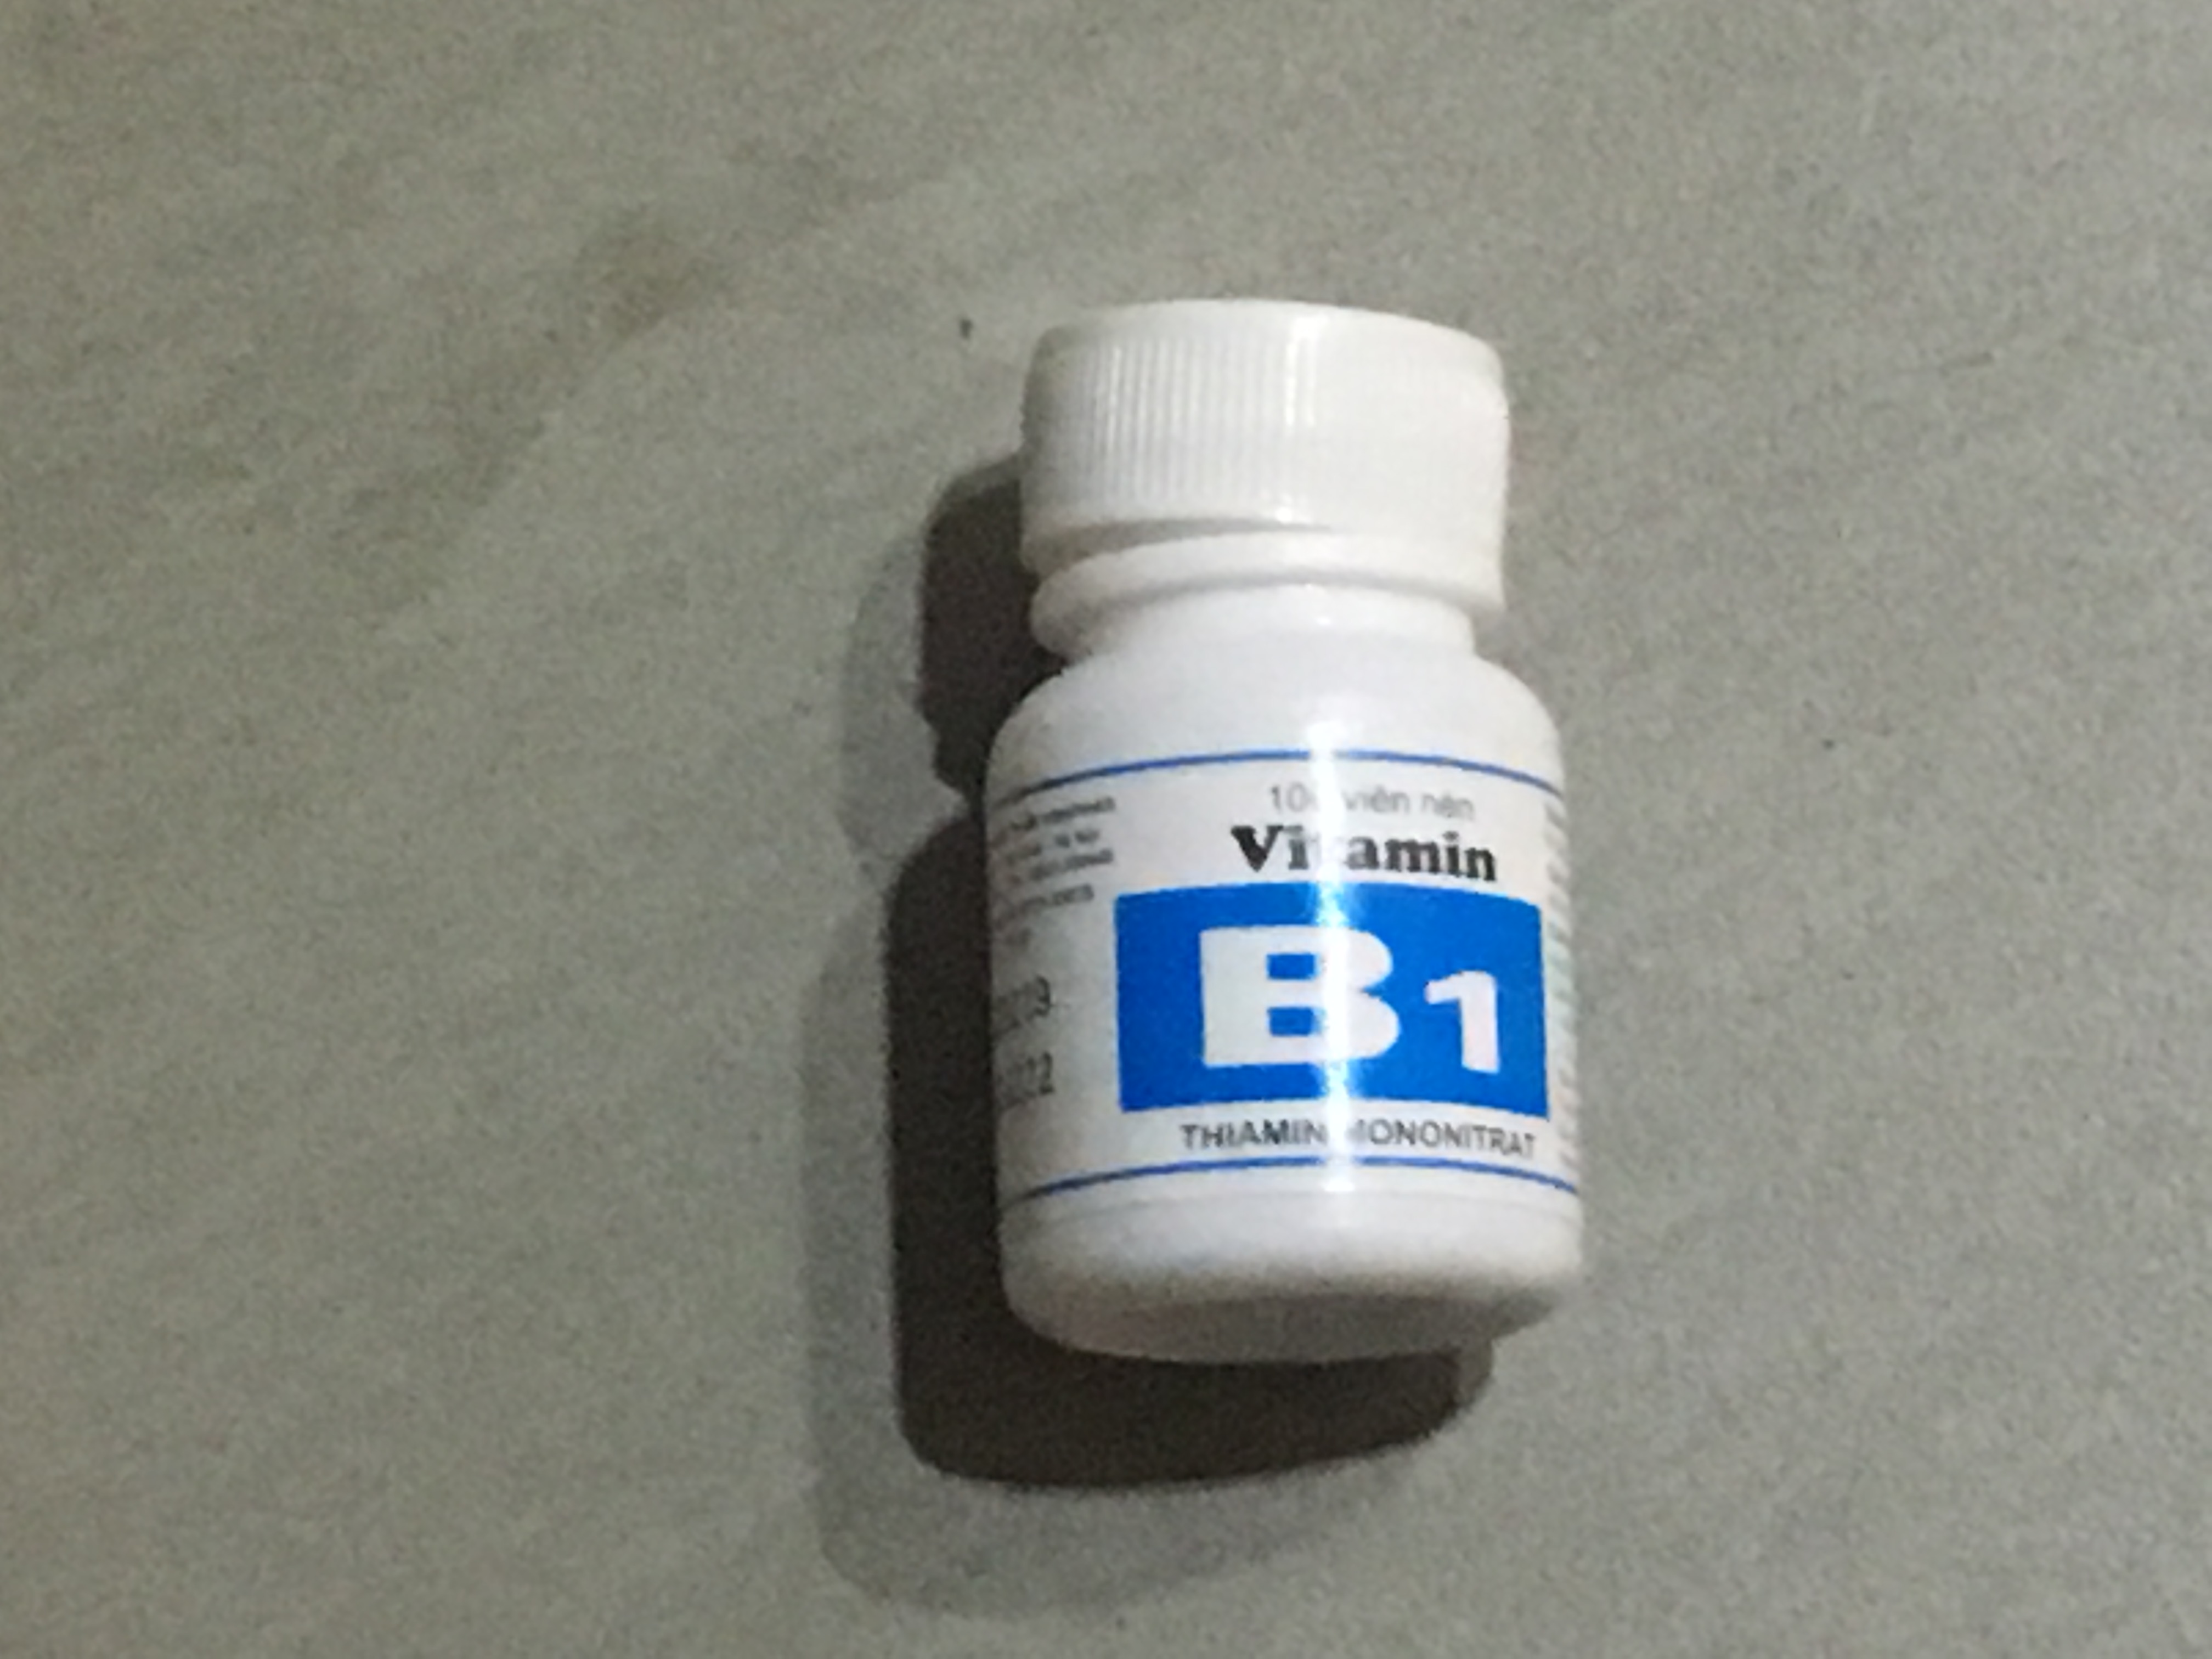 Tại sao cần bổ sung vitamin B1?
